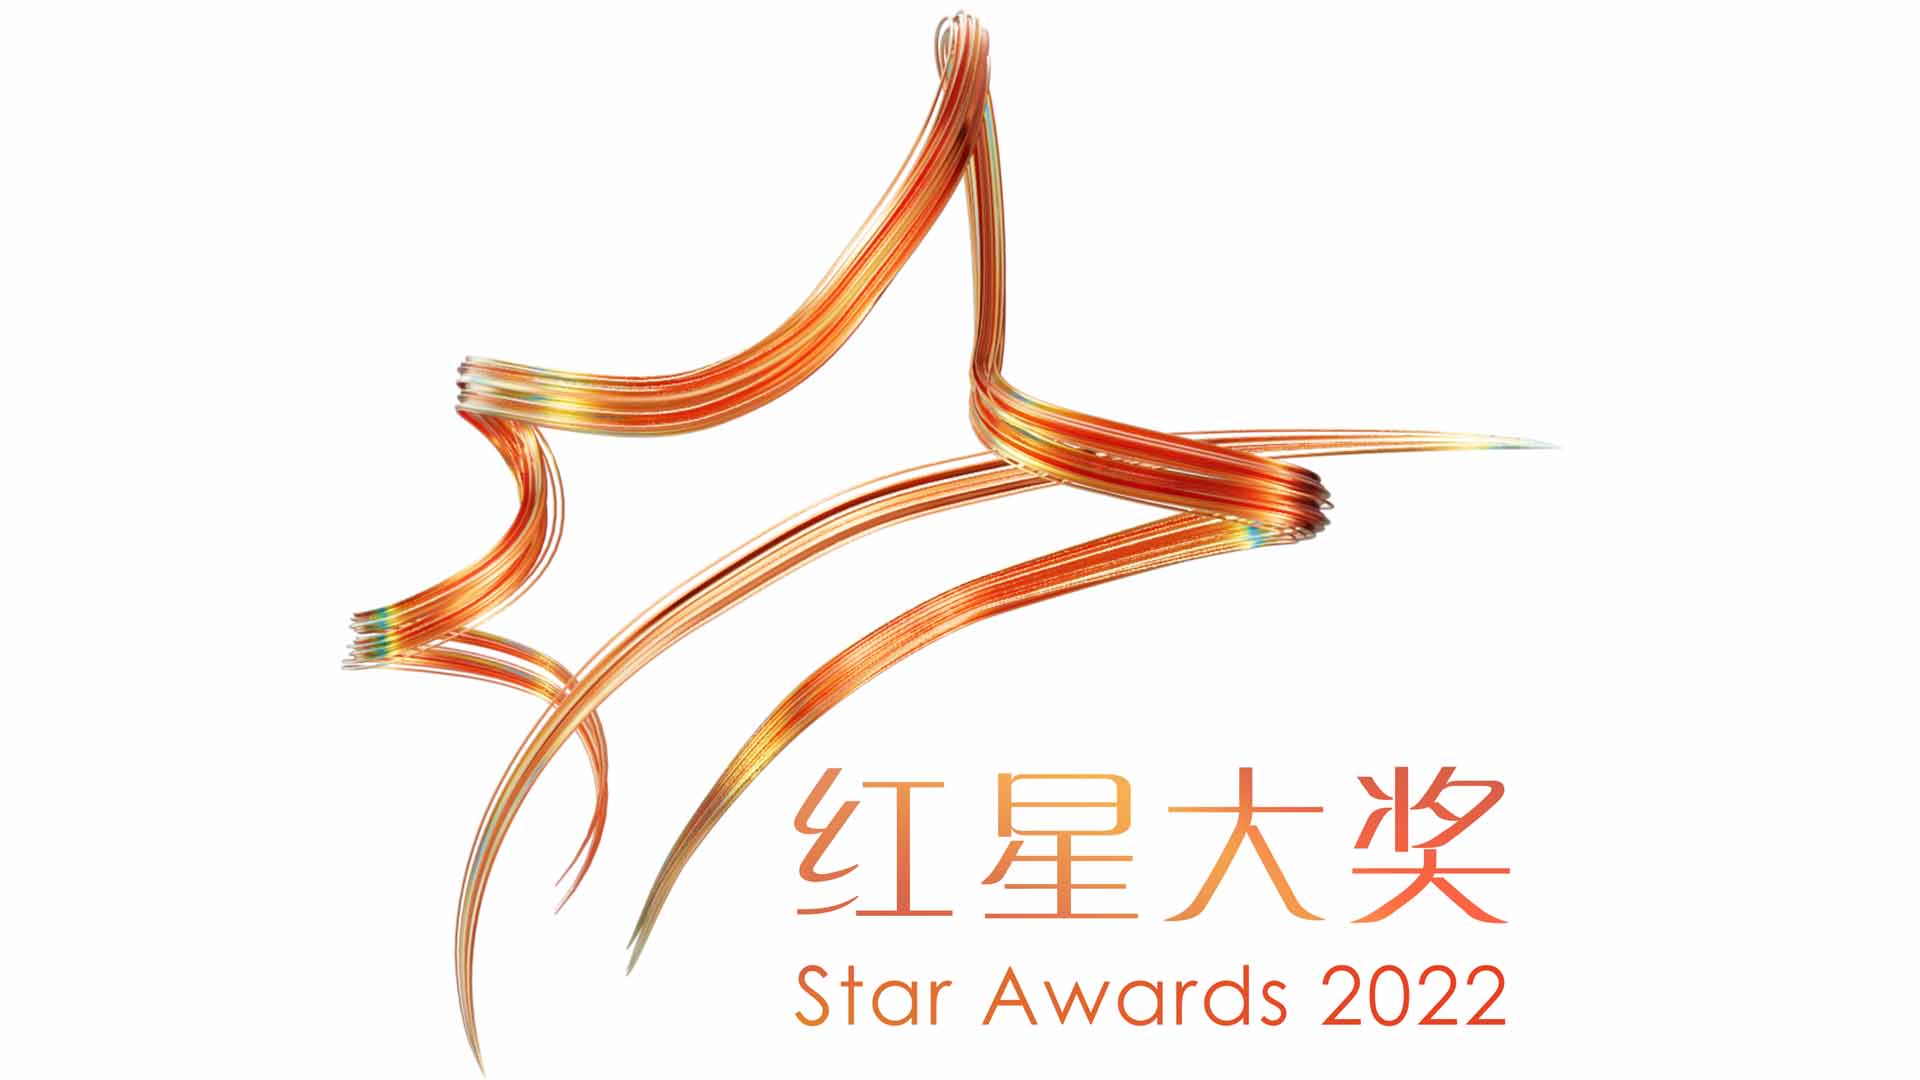 Star Awards 2022